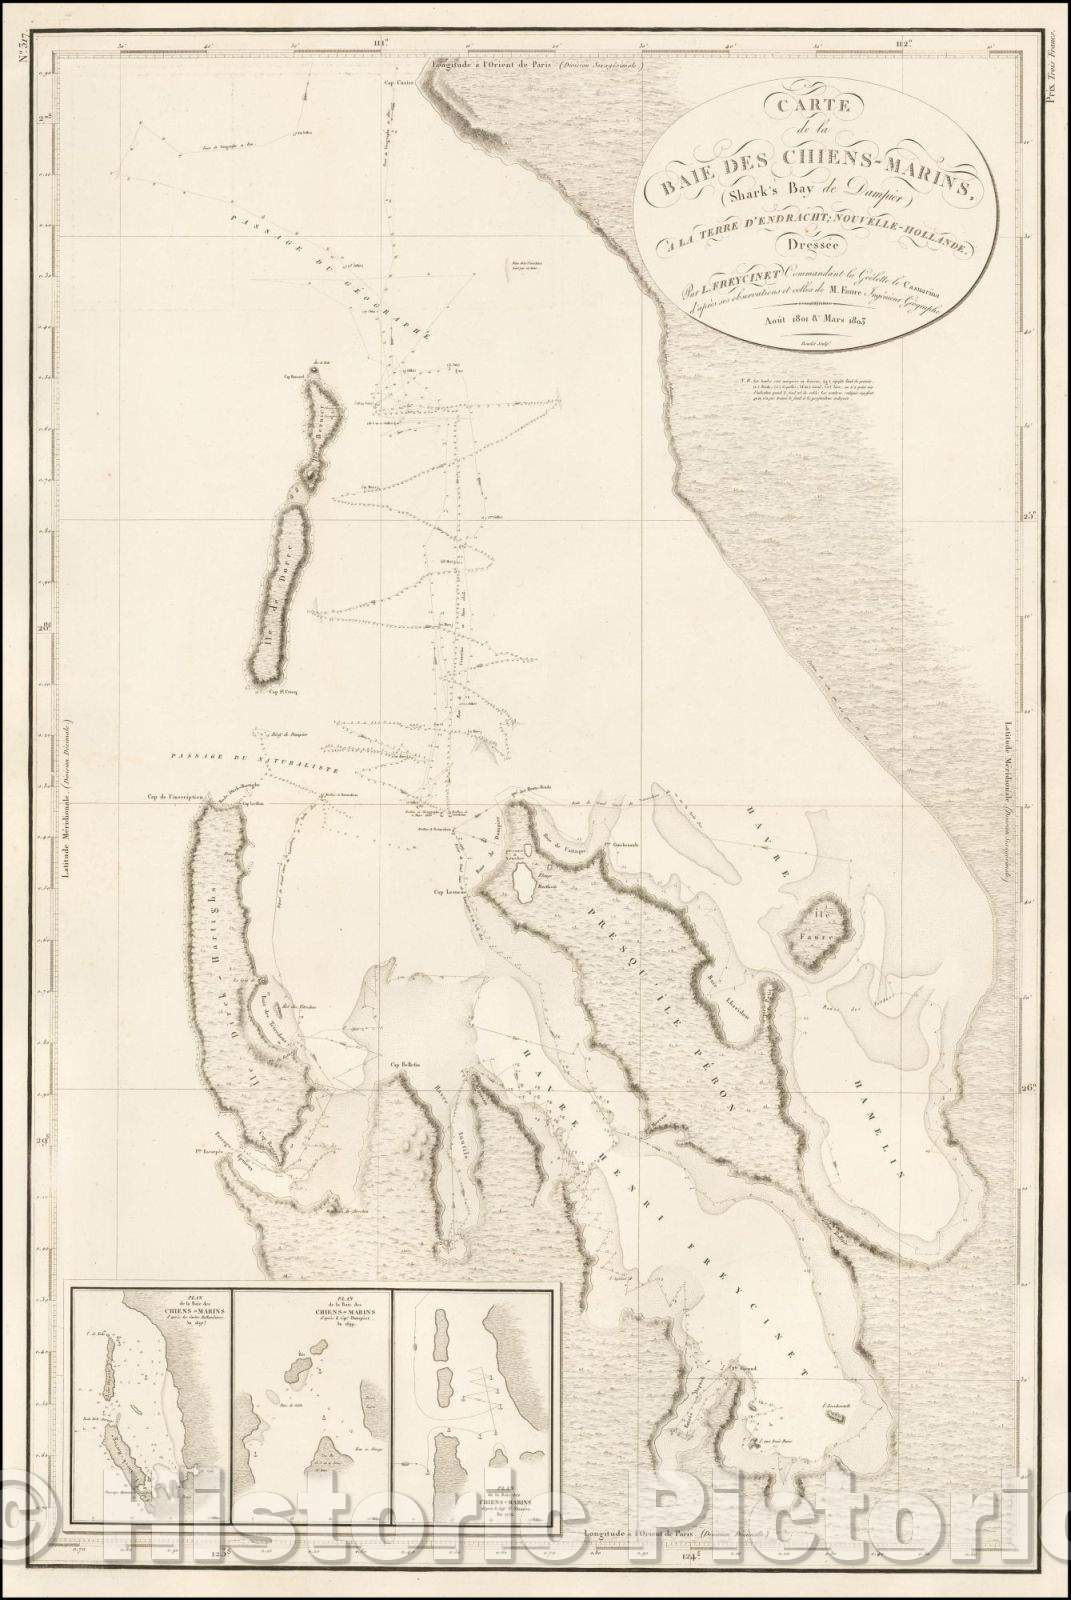 Historic Map - Carte de la Baie Des Chiens-Marins, (Shark's Bay de Dampier) A La Terre D'Endracht :: Western Australia, the Baie des Chiens-Marins, 1812 - Vintage Wall Art